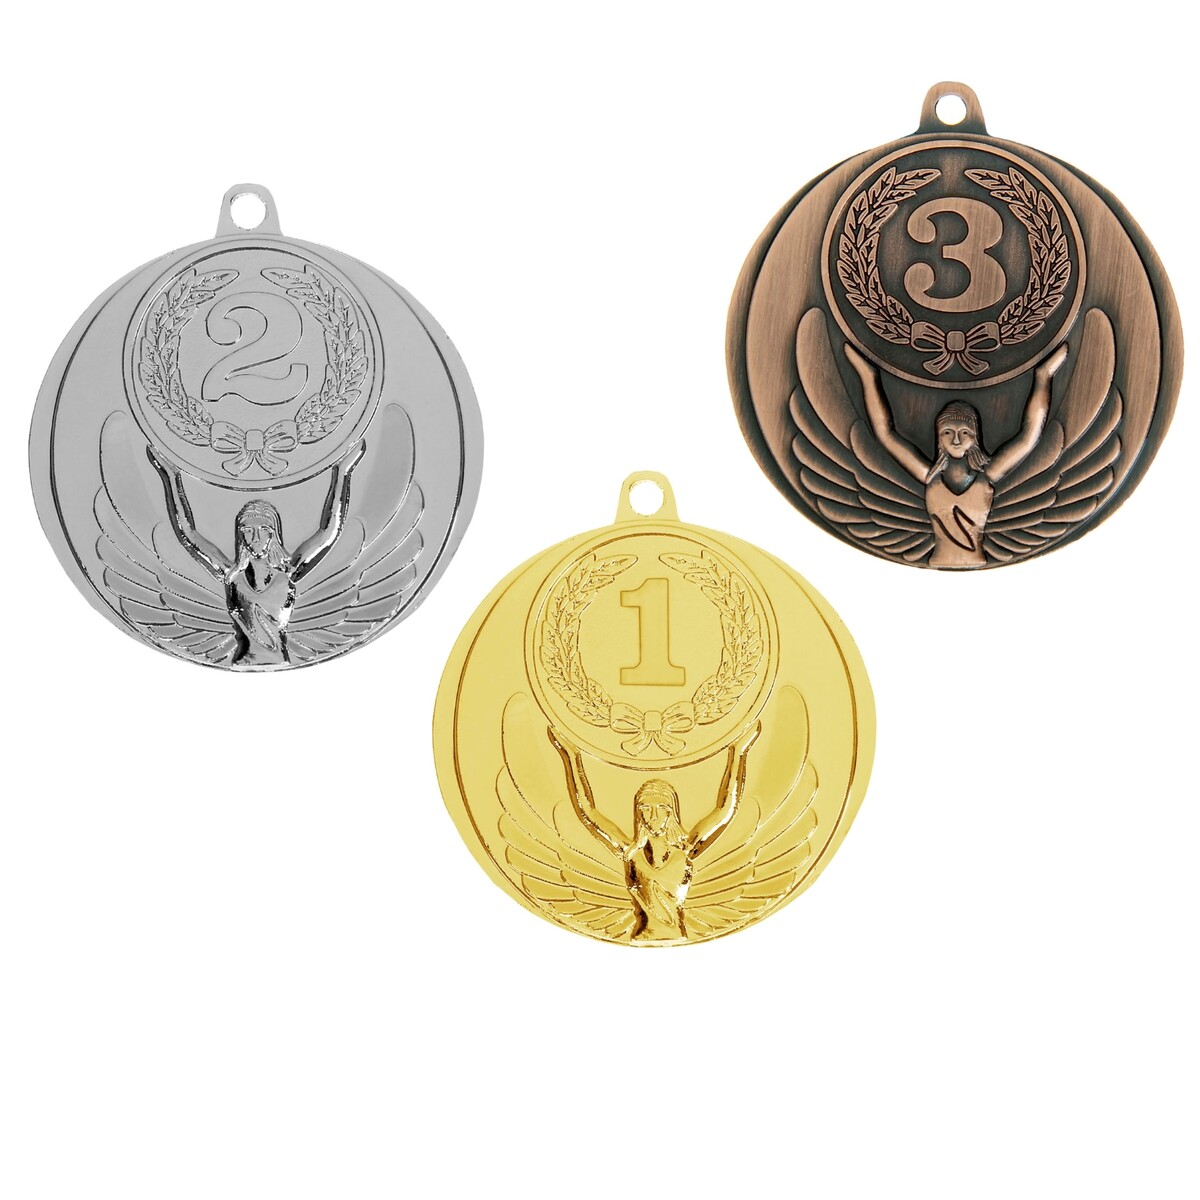 Медаль призовая 017 диам 4,5 см. 3 место. цвет бронз. без ленты медаль призовая 193 диам 3 5 см 3 место триколор бронз без ленты